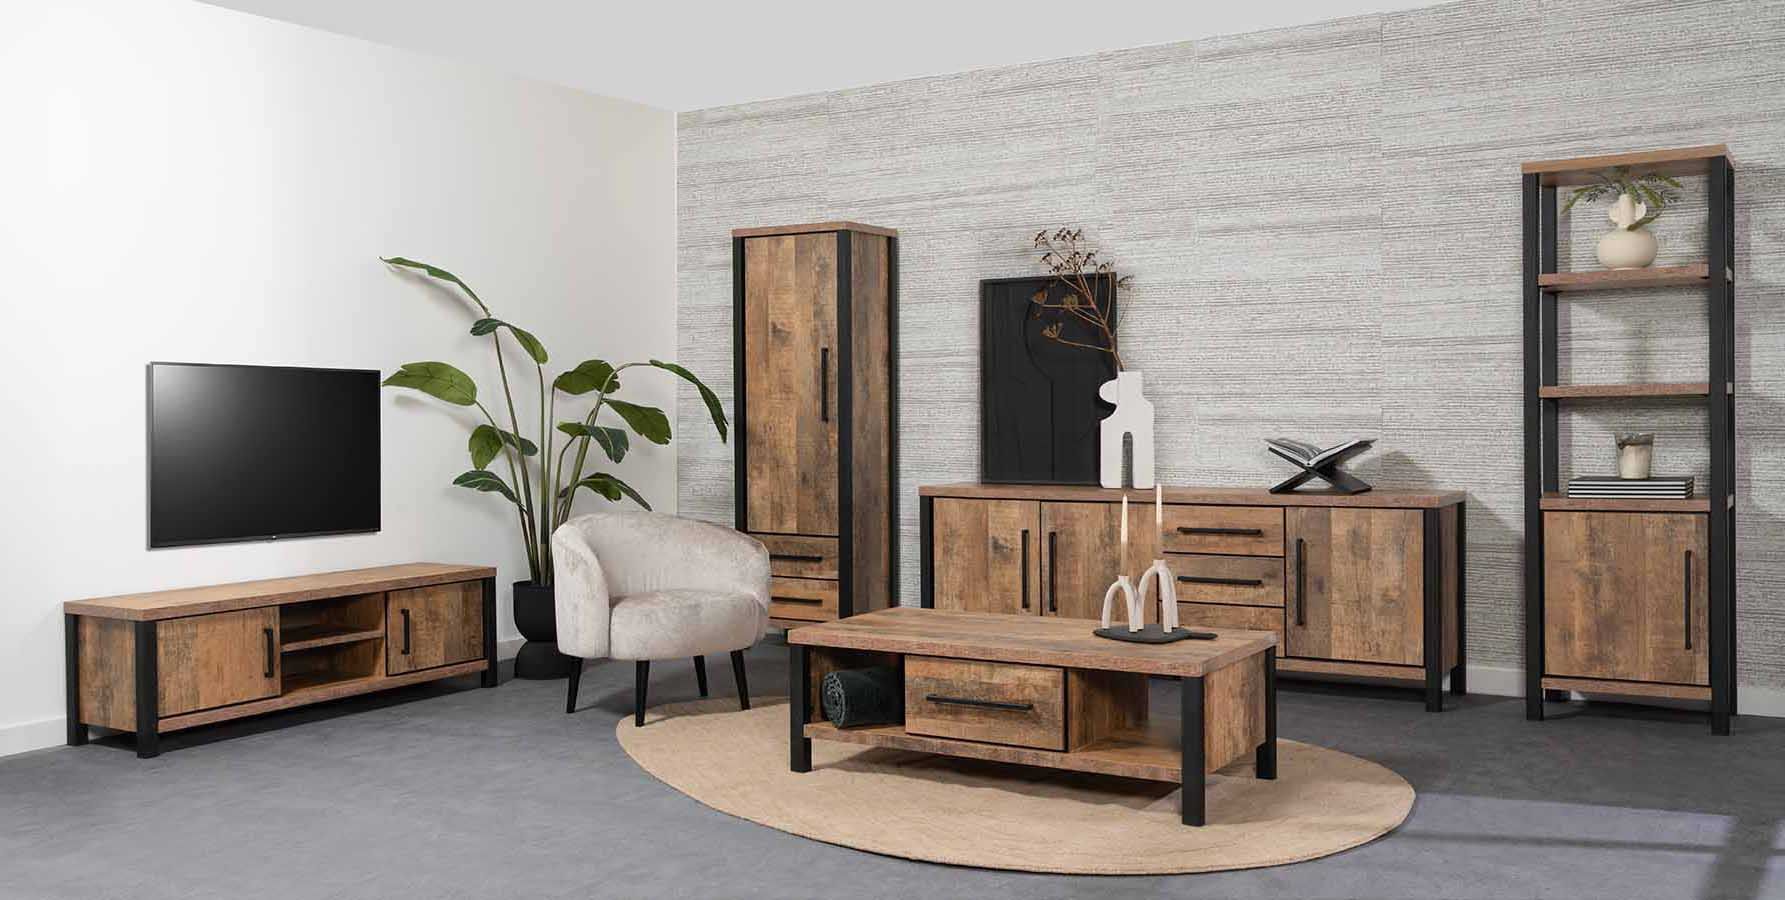 Rubber Speciaal Postbode Industriële woonkamer inrichten - Complete meubelsets | Haco | Haco.nu